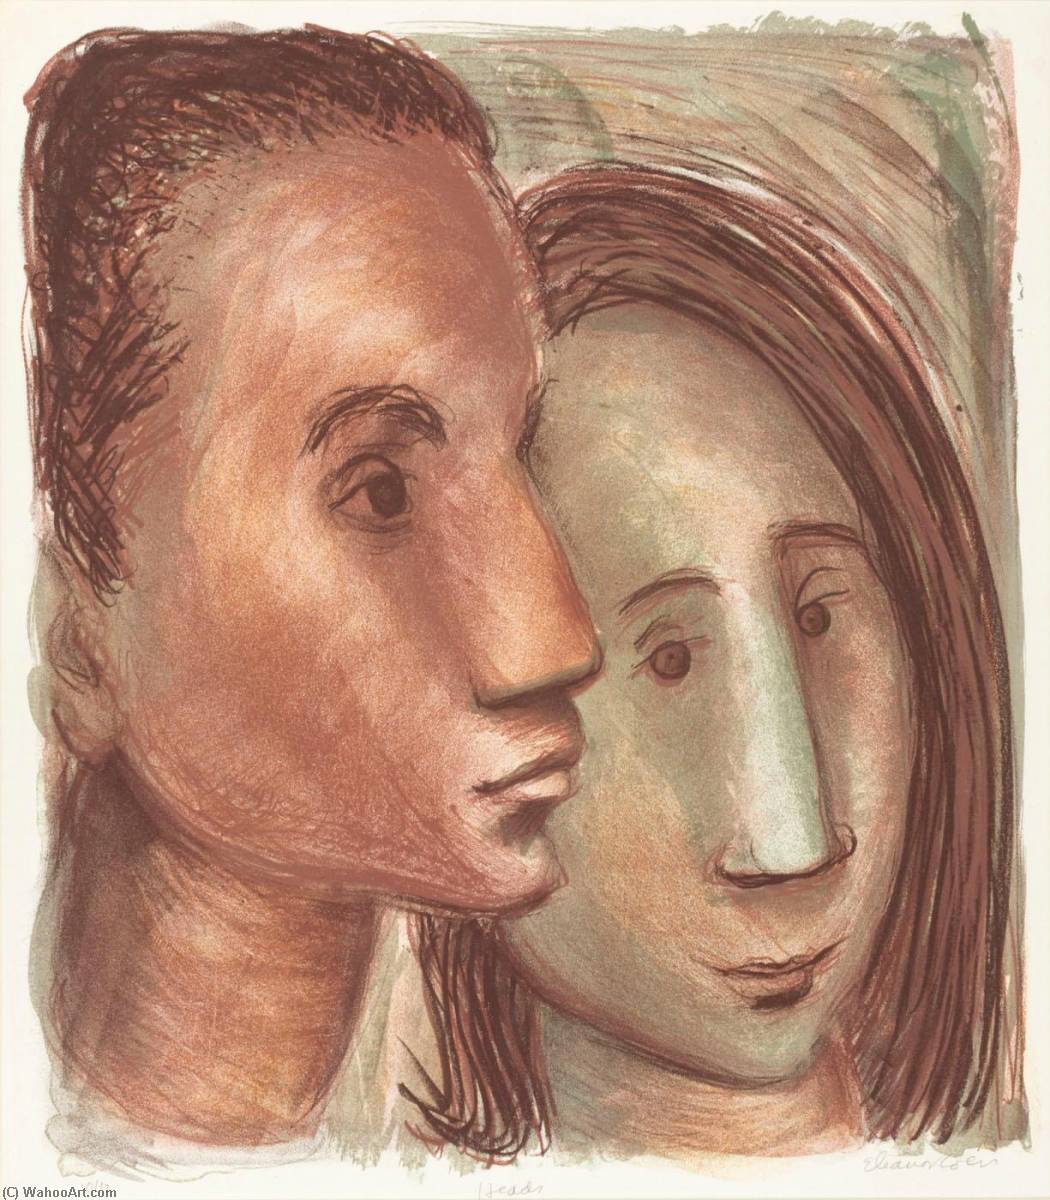 WikiOO.org - Εγκυκλοπαίδεια Καλών Τεχνών - Ζωγραφική, έργα τέχνης Eleanor Coen - Heads